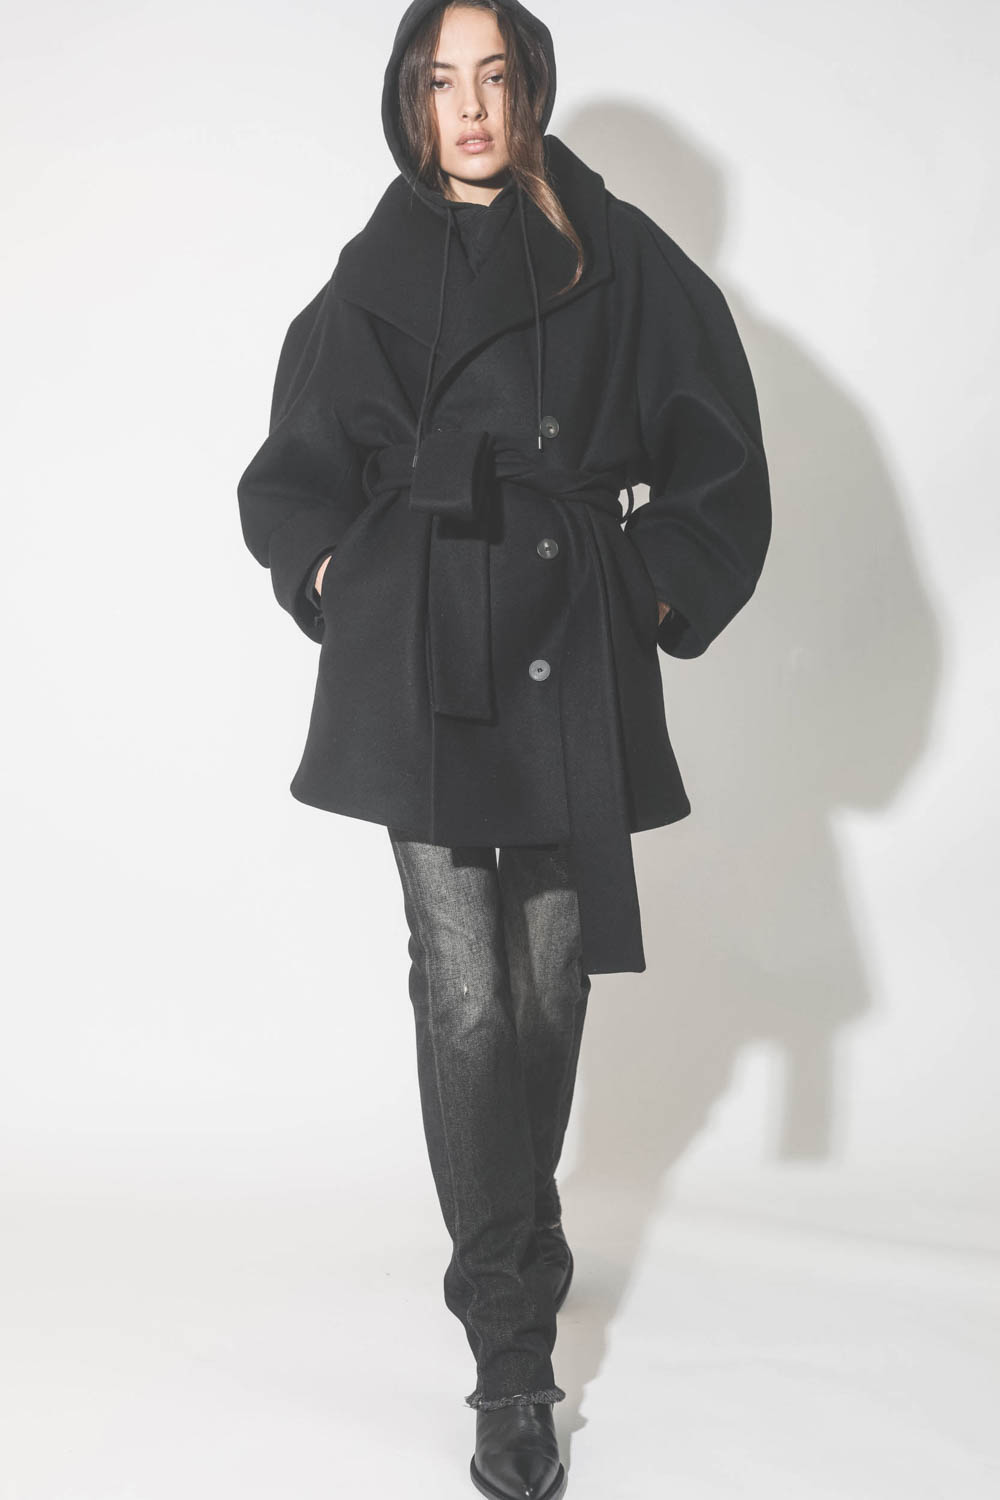 Manteau caban ceinturé en drap de laine noir Suzzane Vautrait. Porté avec un sweat-shirt à capuche noir.